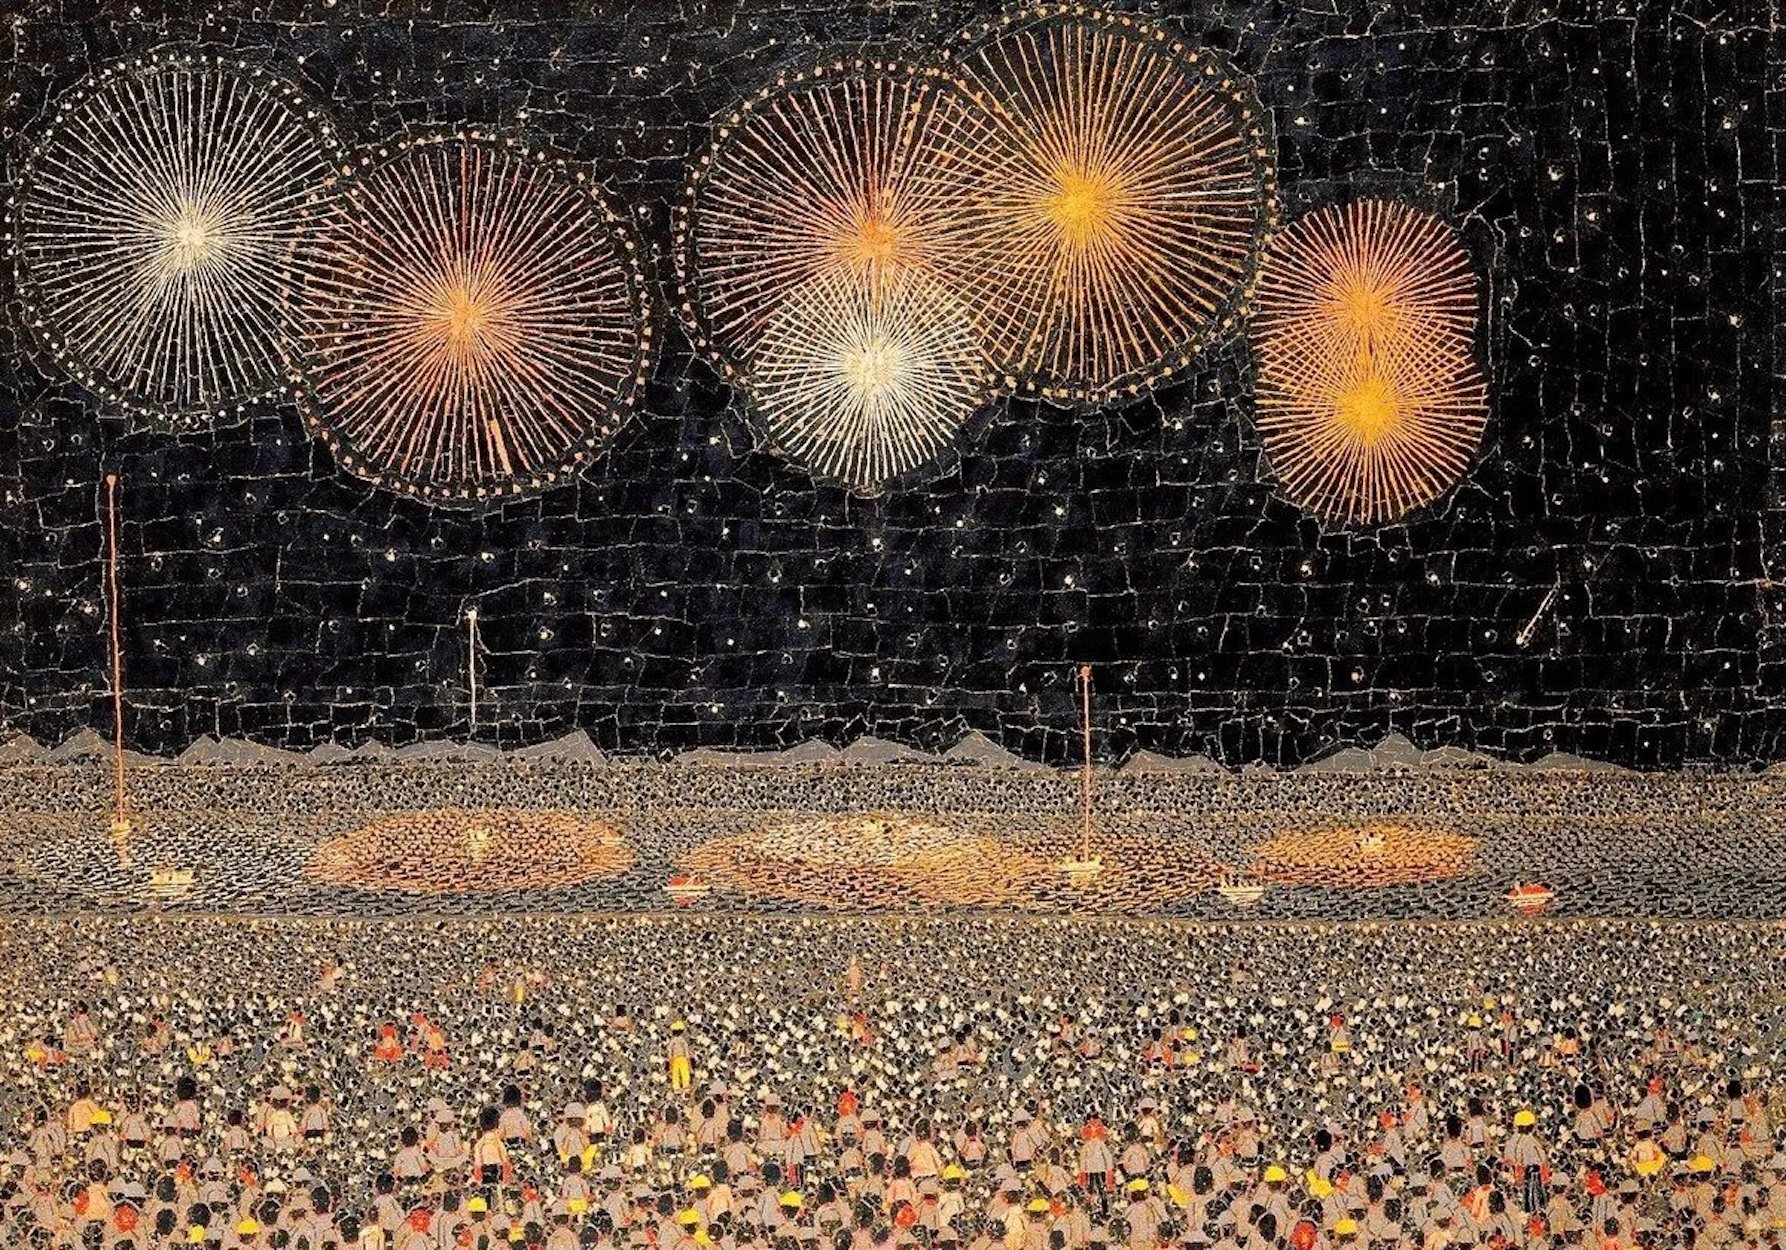 나가오카의 불꽃놀이(Fireworks in Nagaoka) by Kiyoshi Yamashita - 1950년 - 45 x 64 cm 